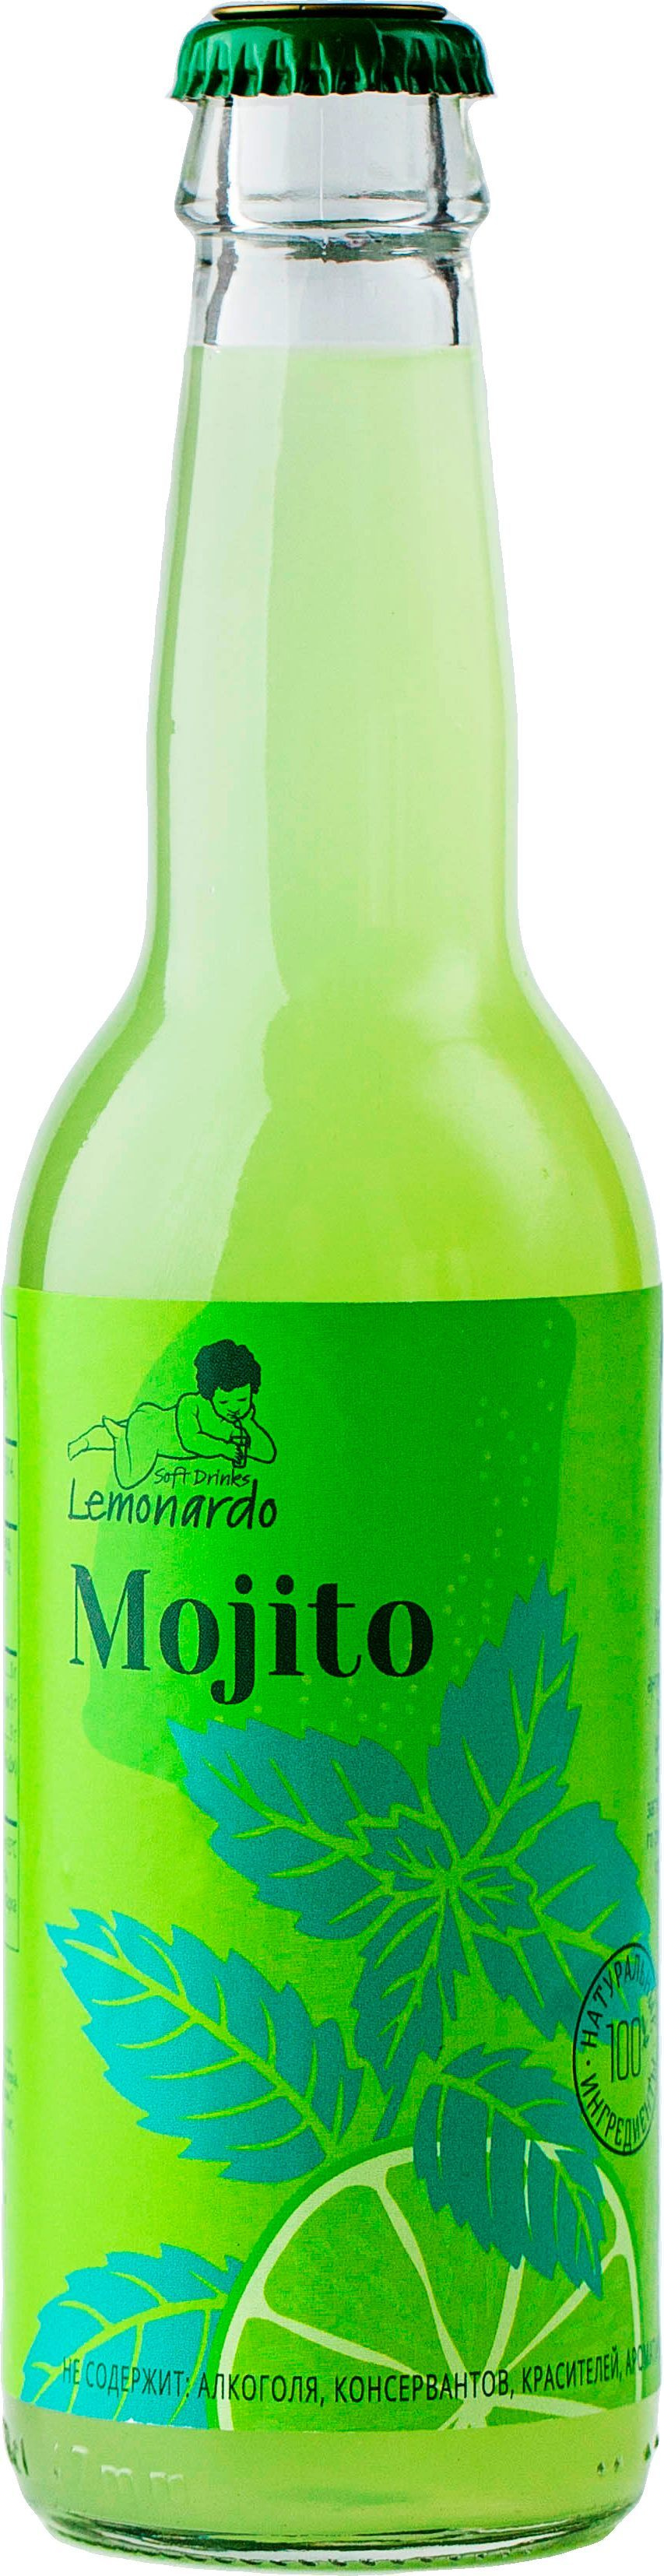 Безалкогольный мохито без сахара / Lemonardo Mojito, 330мл.